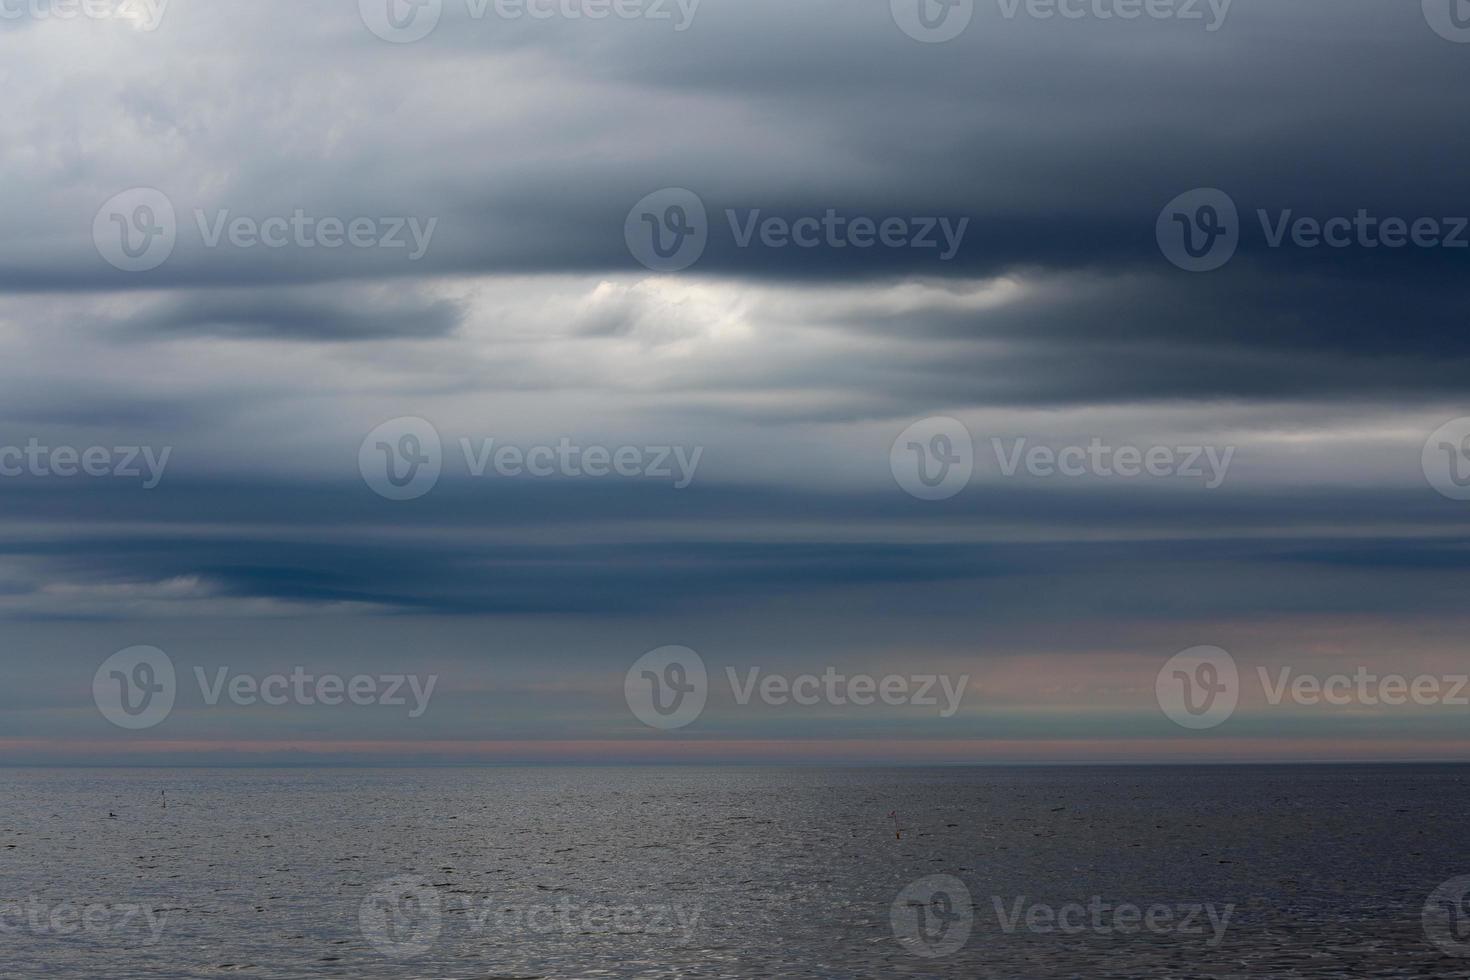 costa del mar báltico al atardecer foto